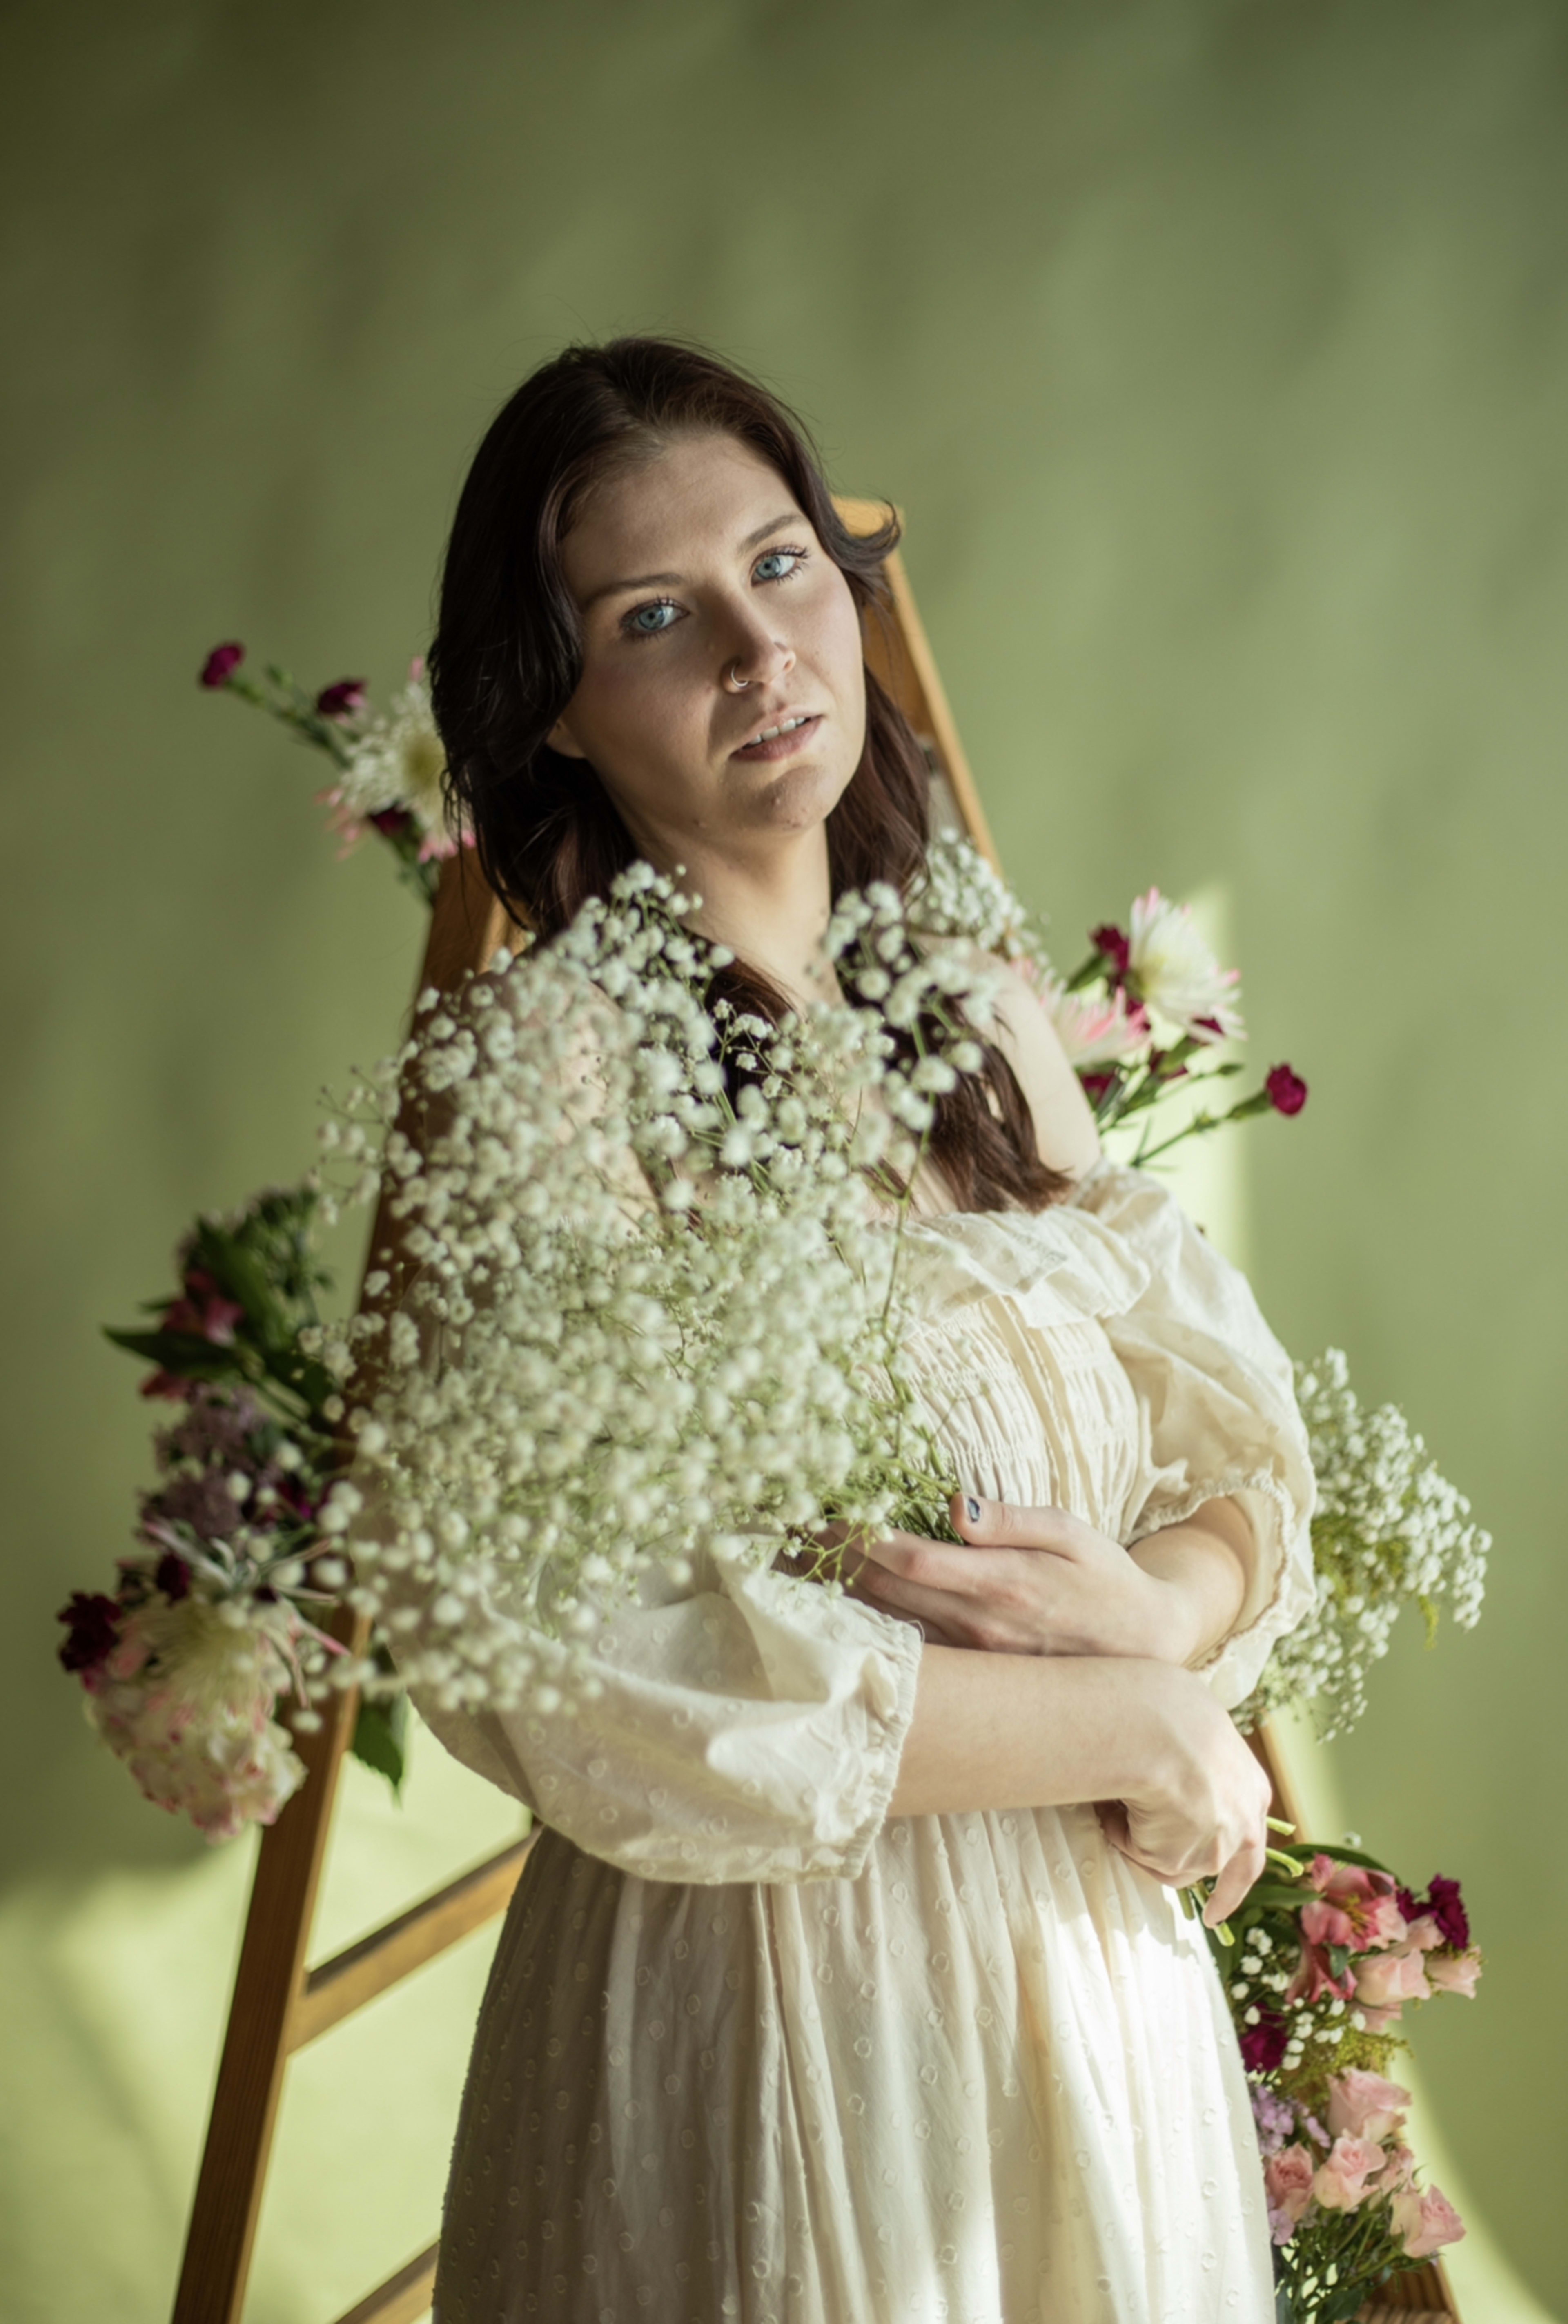 Una sesión de fotos de moda protagonizada por una mujer vestida de blanco y un ramo de flores primaverales.